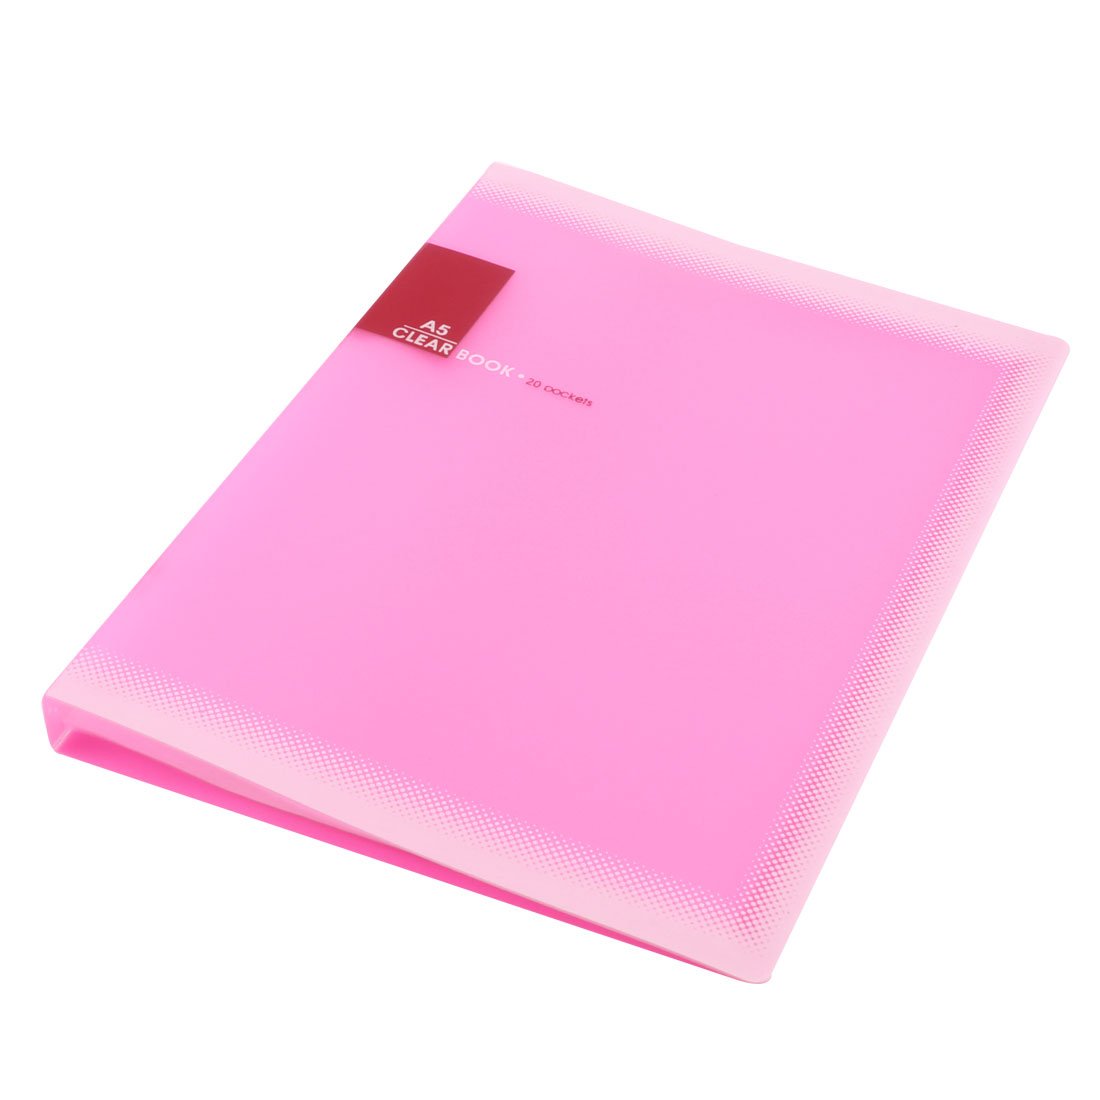 Promotion! Plastic A5 Paper 20 Pockets File Document Folder Holder, Pink